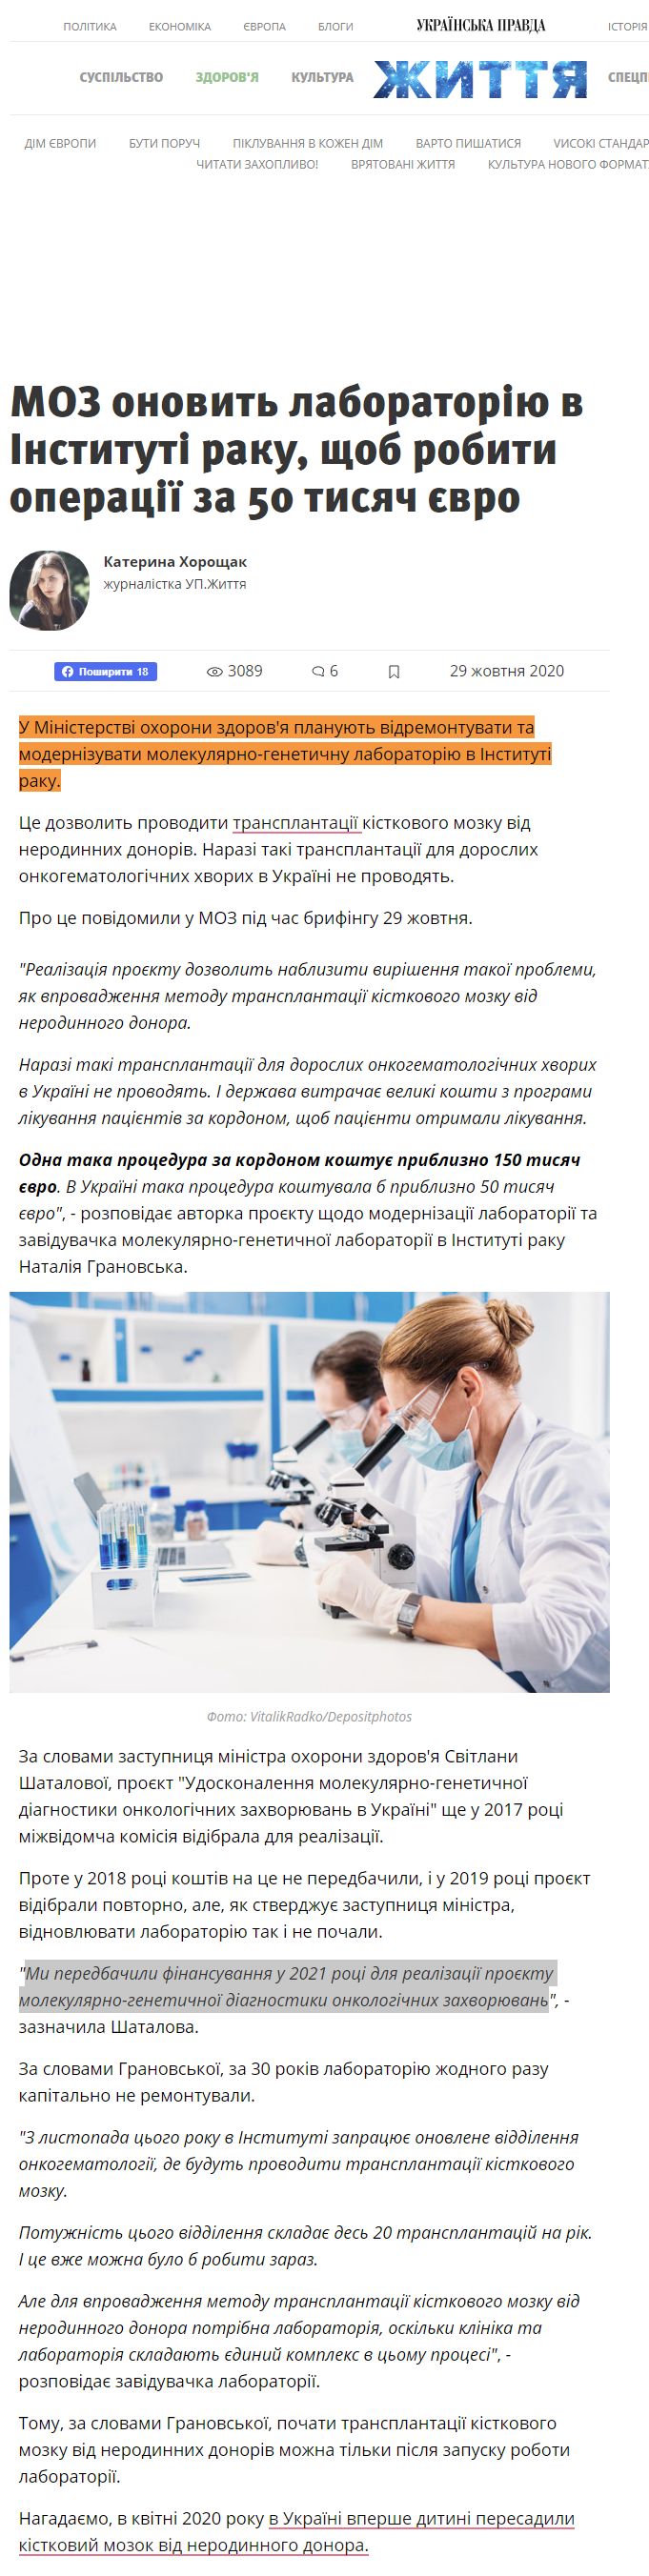 https://life.pravda.com.ua/health/2020/10/29/242823/